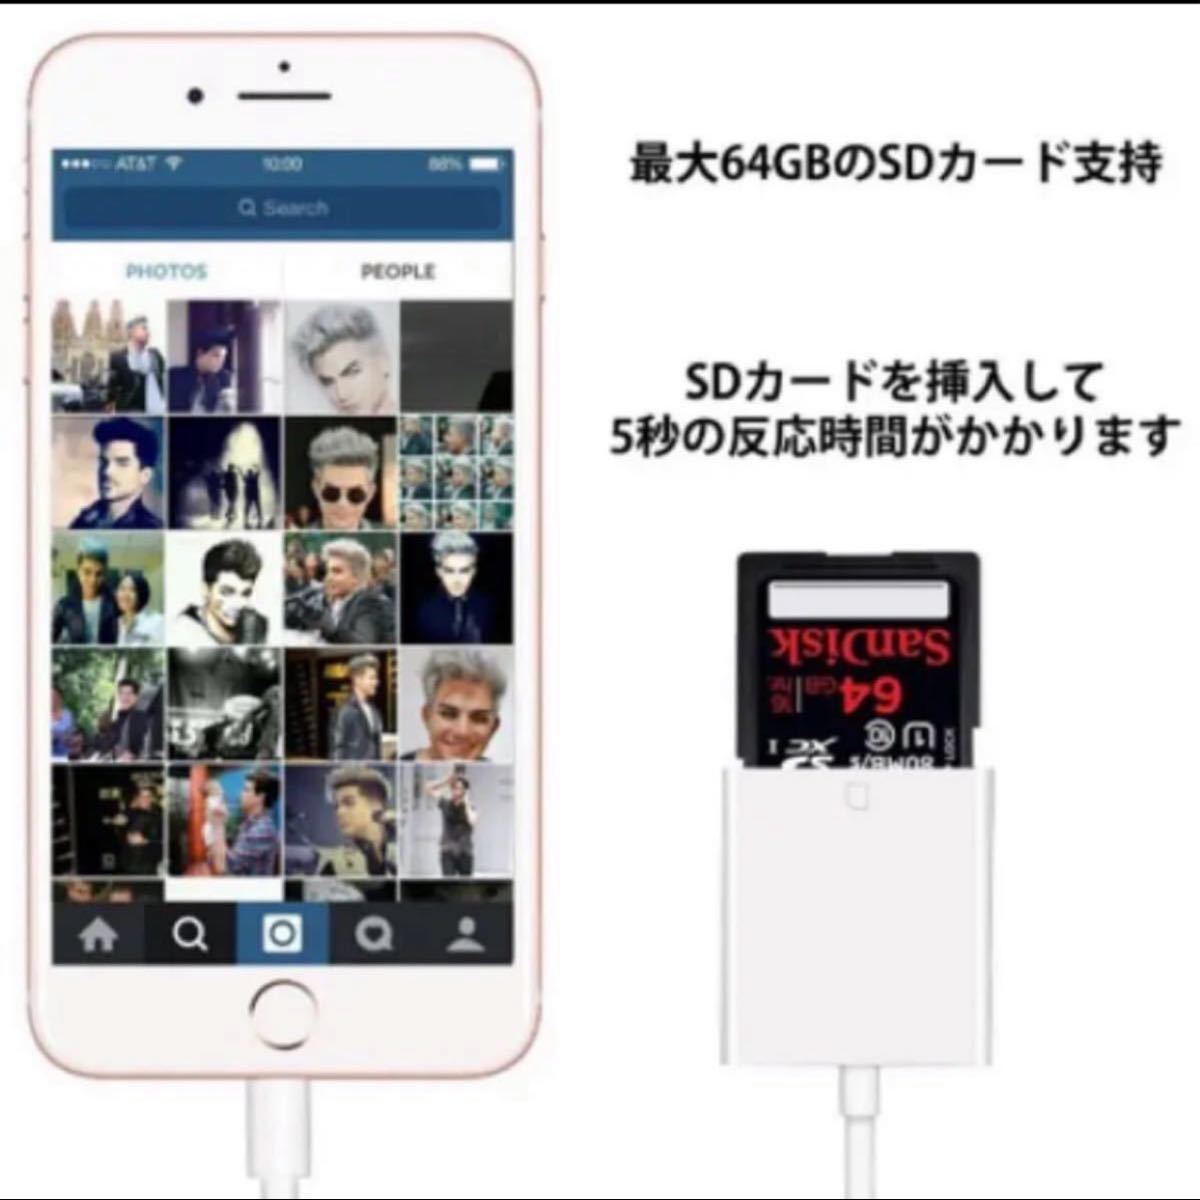 IOS 13 対応 iPhone iPad 用ライトニング iPhone iPadLightning SD カード リーダー 写真